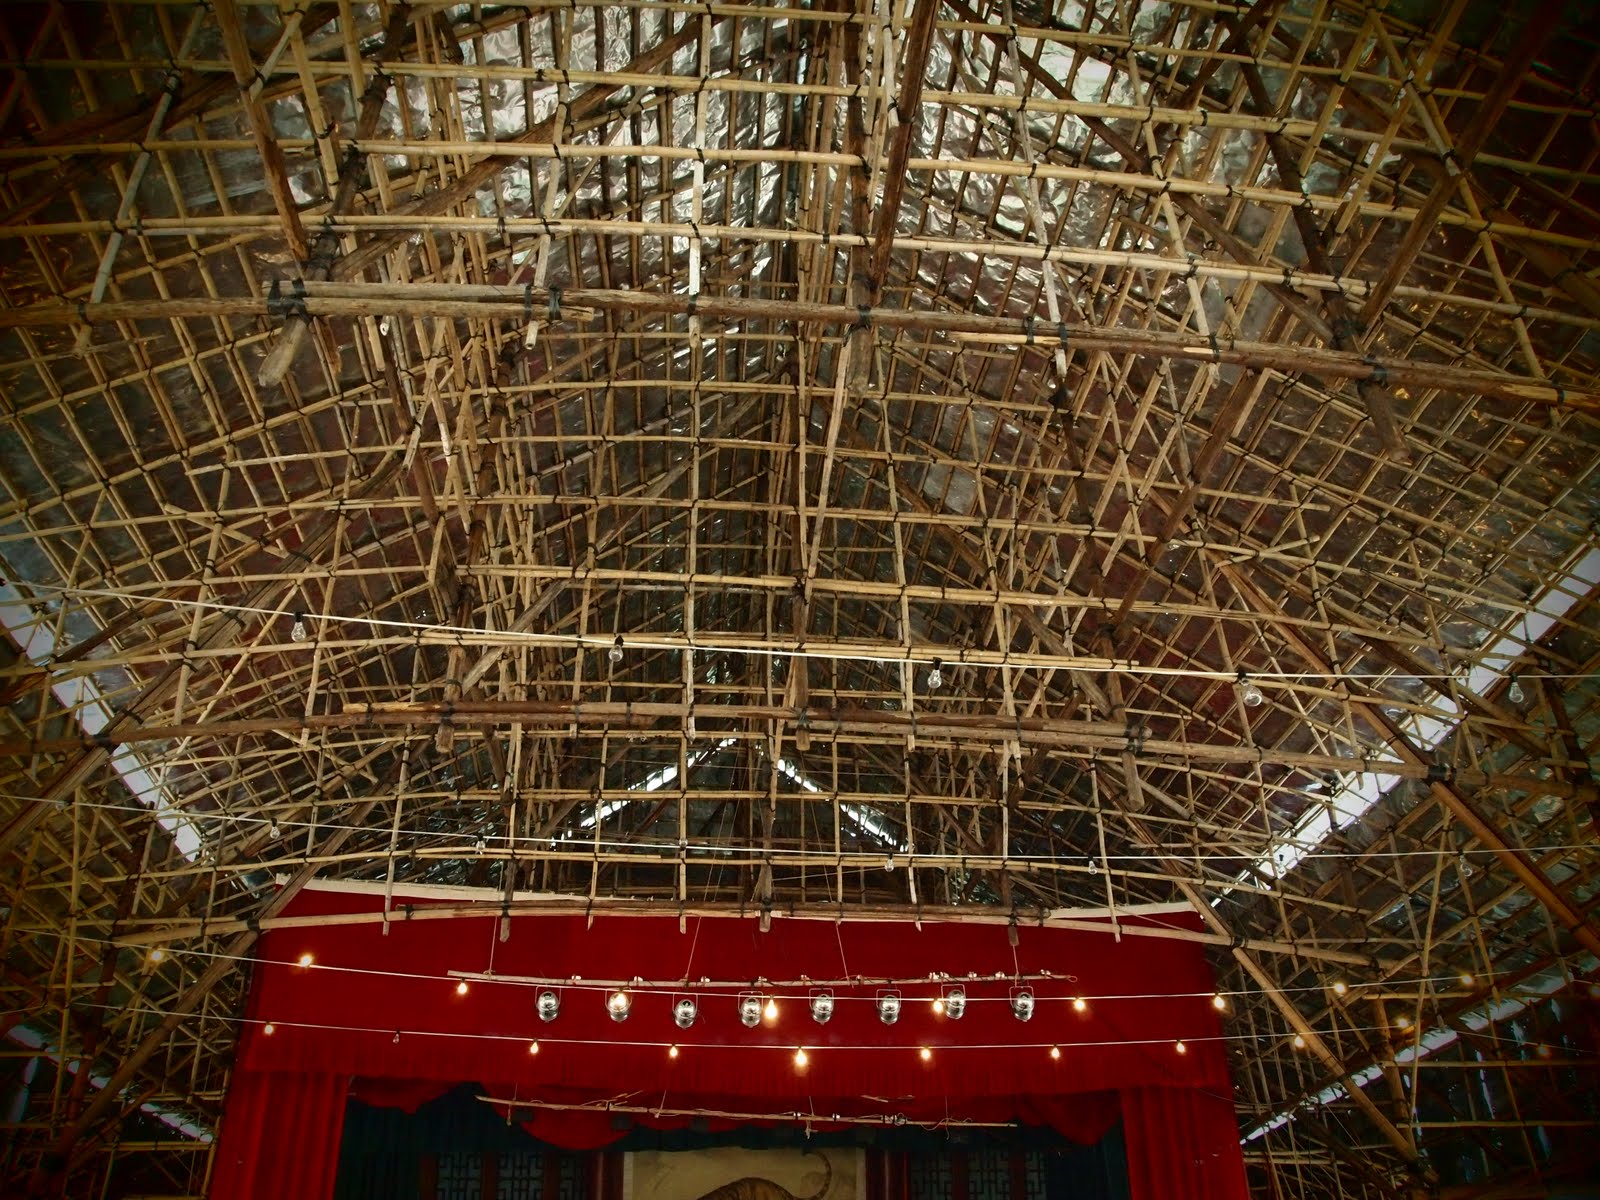 竹造戲棚建造及特色—五勤(樂)杜紫欣: 竹造戲棚的建造過程—「棚朗」